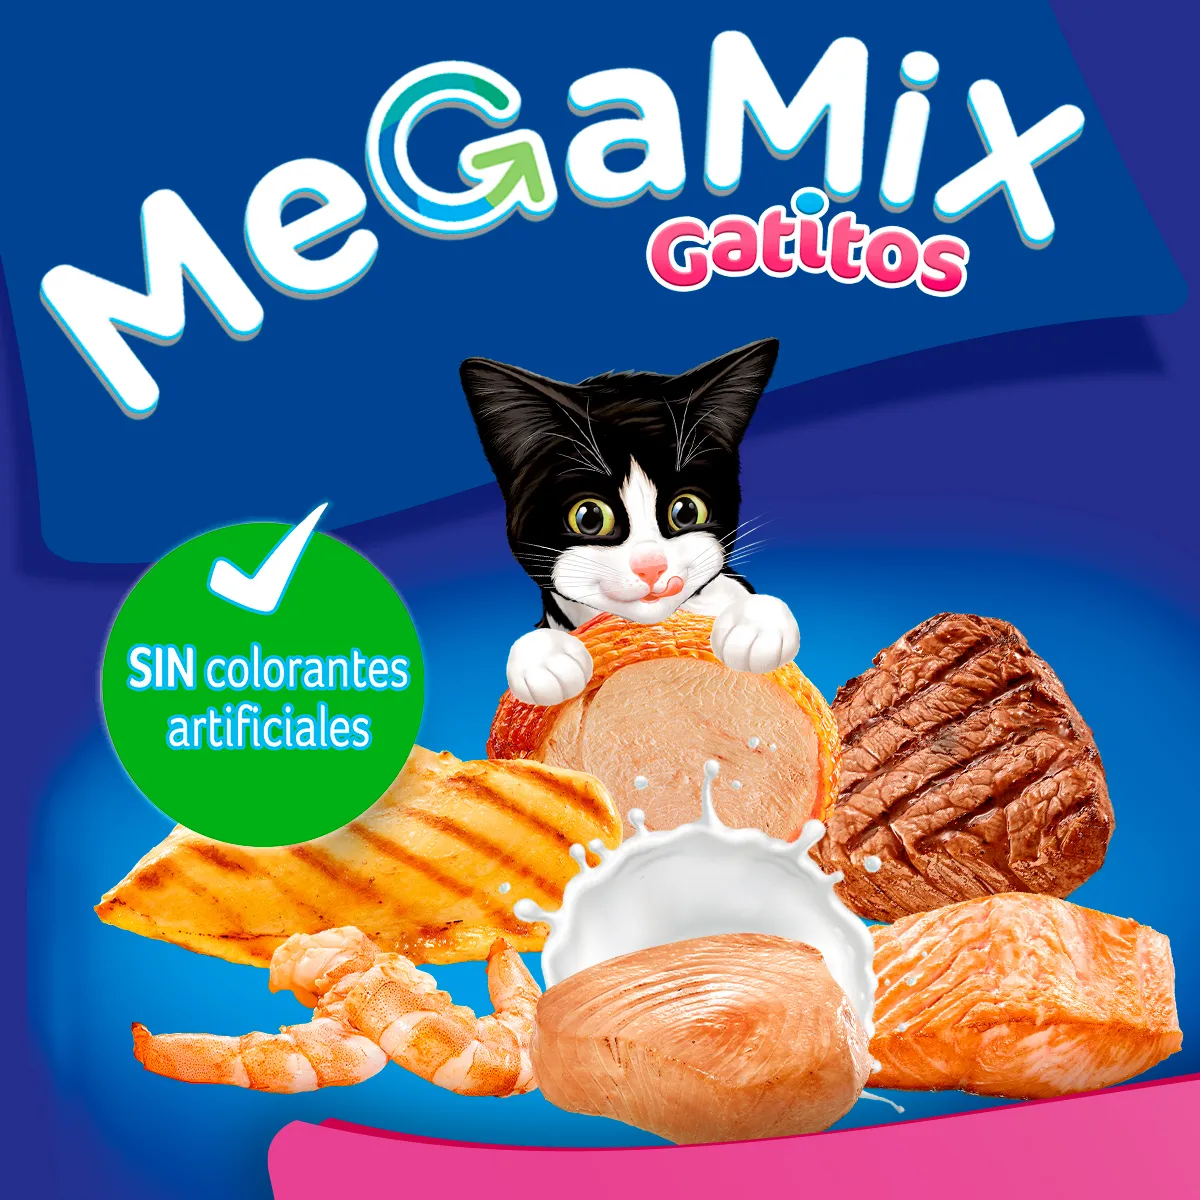 1.-Key-Ingrediant---Megamix-gatitos.jpg